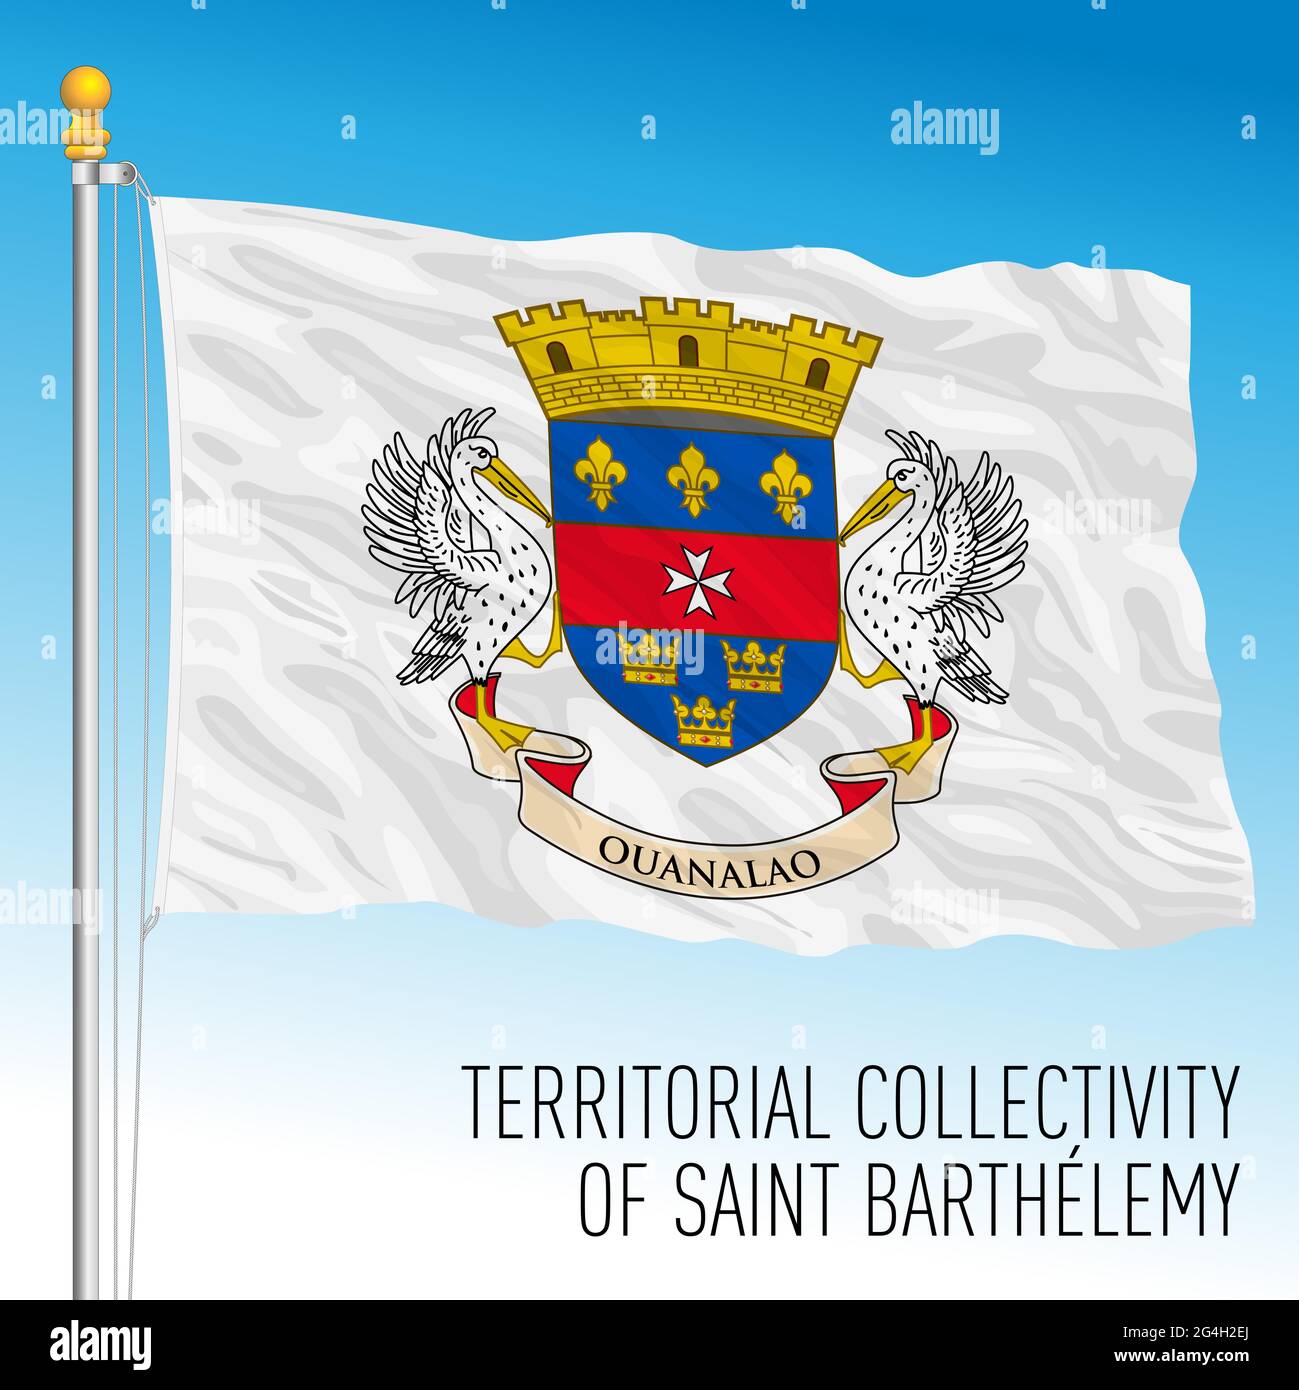 Saint Barthelemy Territorialflagge, Frankreich, karibisches Land, Vektorgrafik Stock Vektor